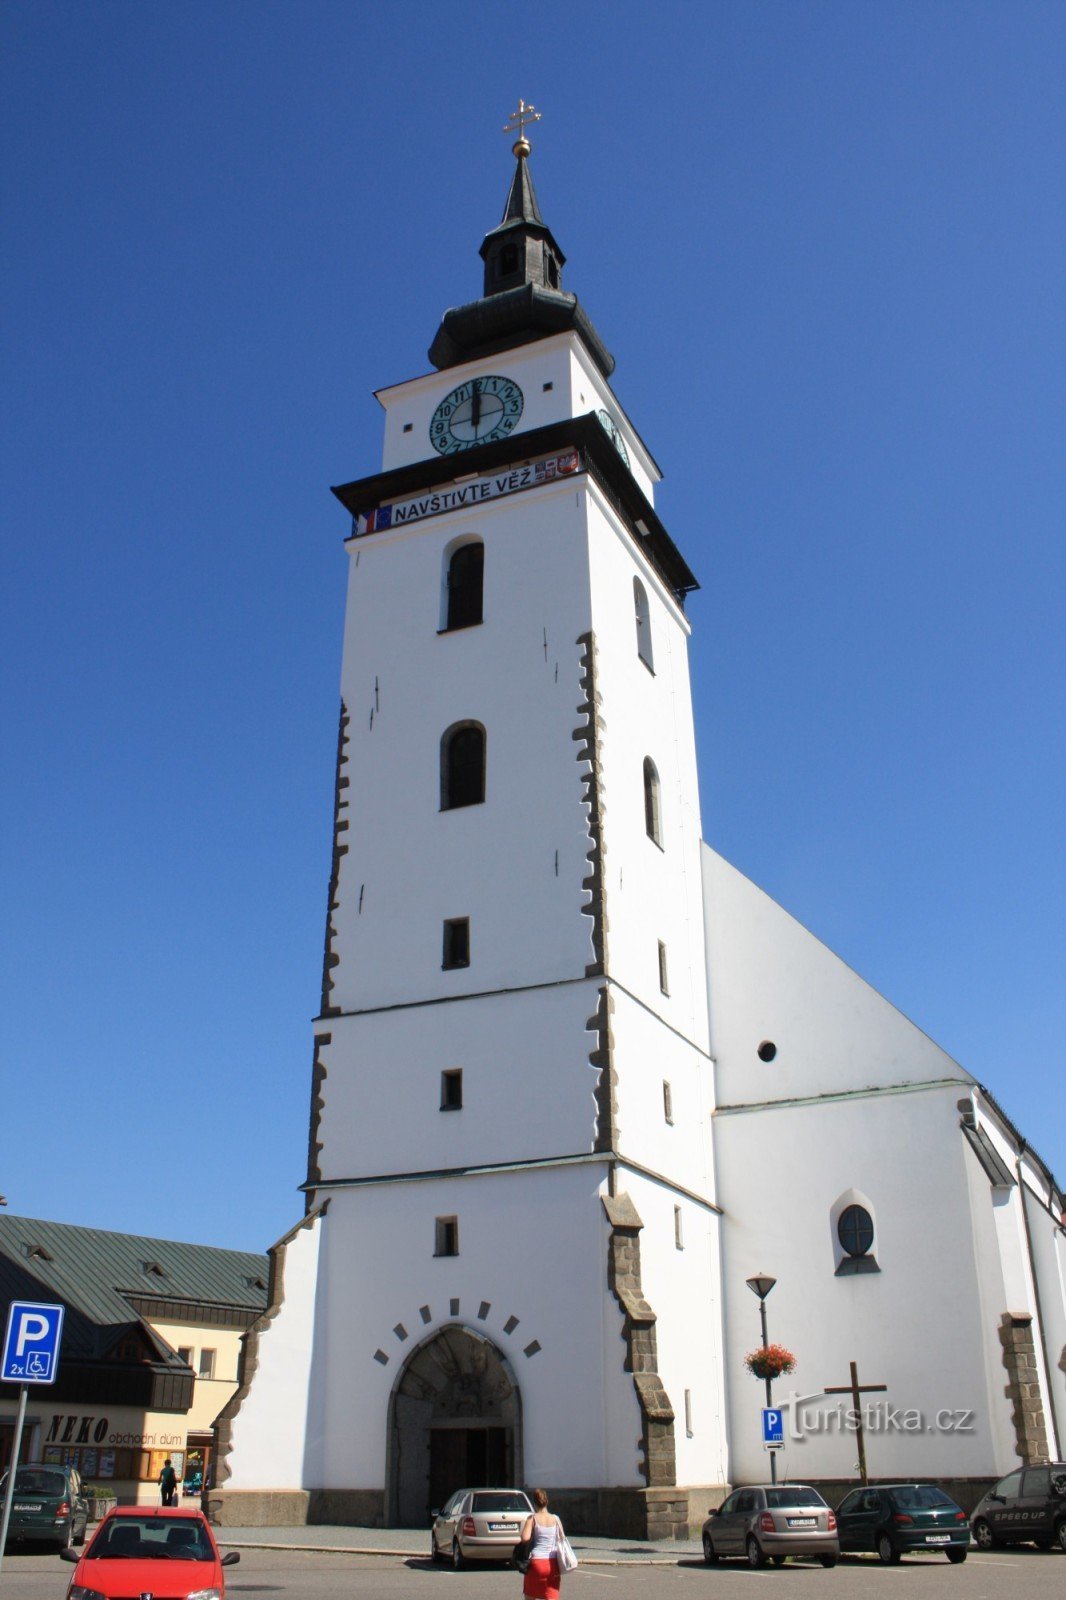 Веле Мезиржичи - городская башня